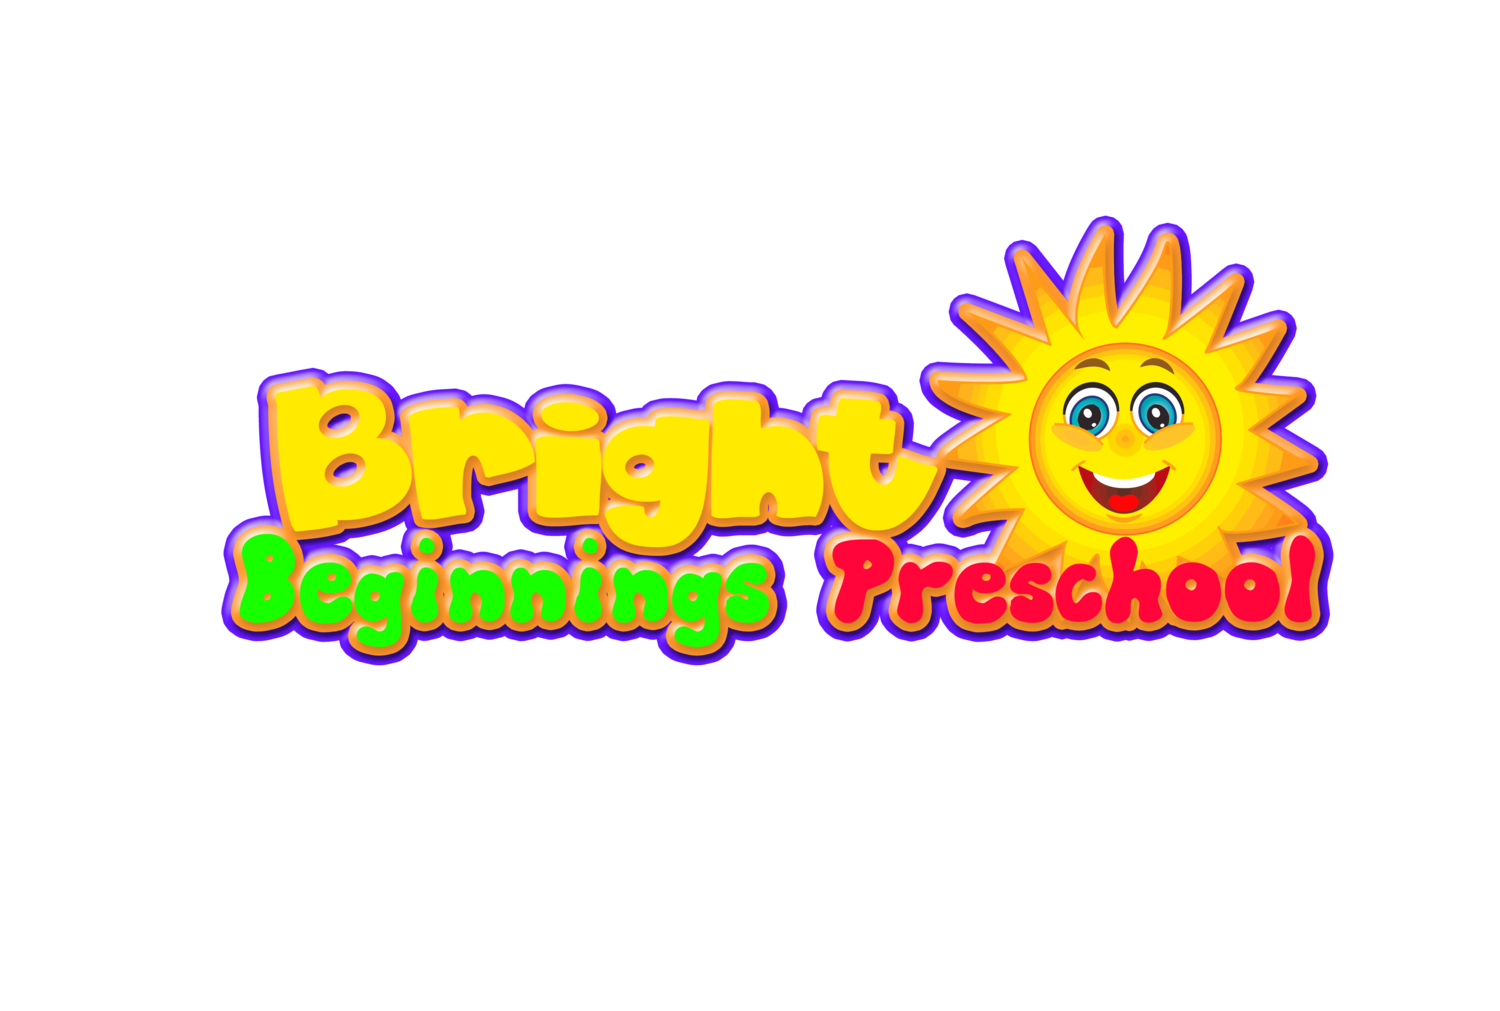 Bright Beginnings Preschool